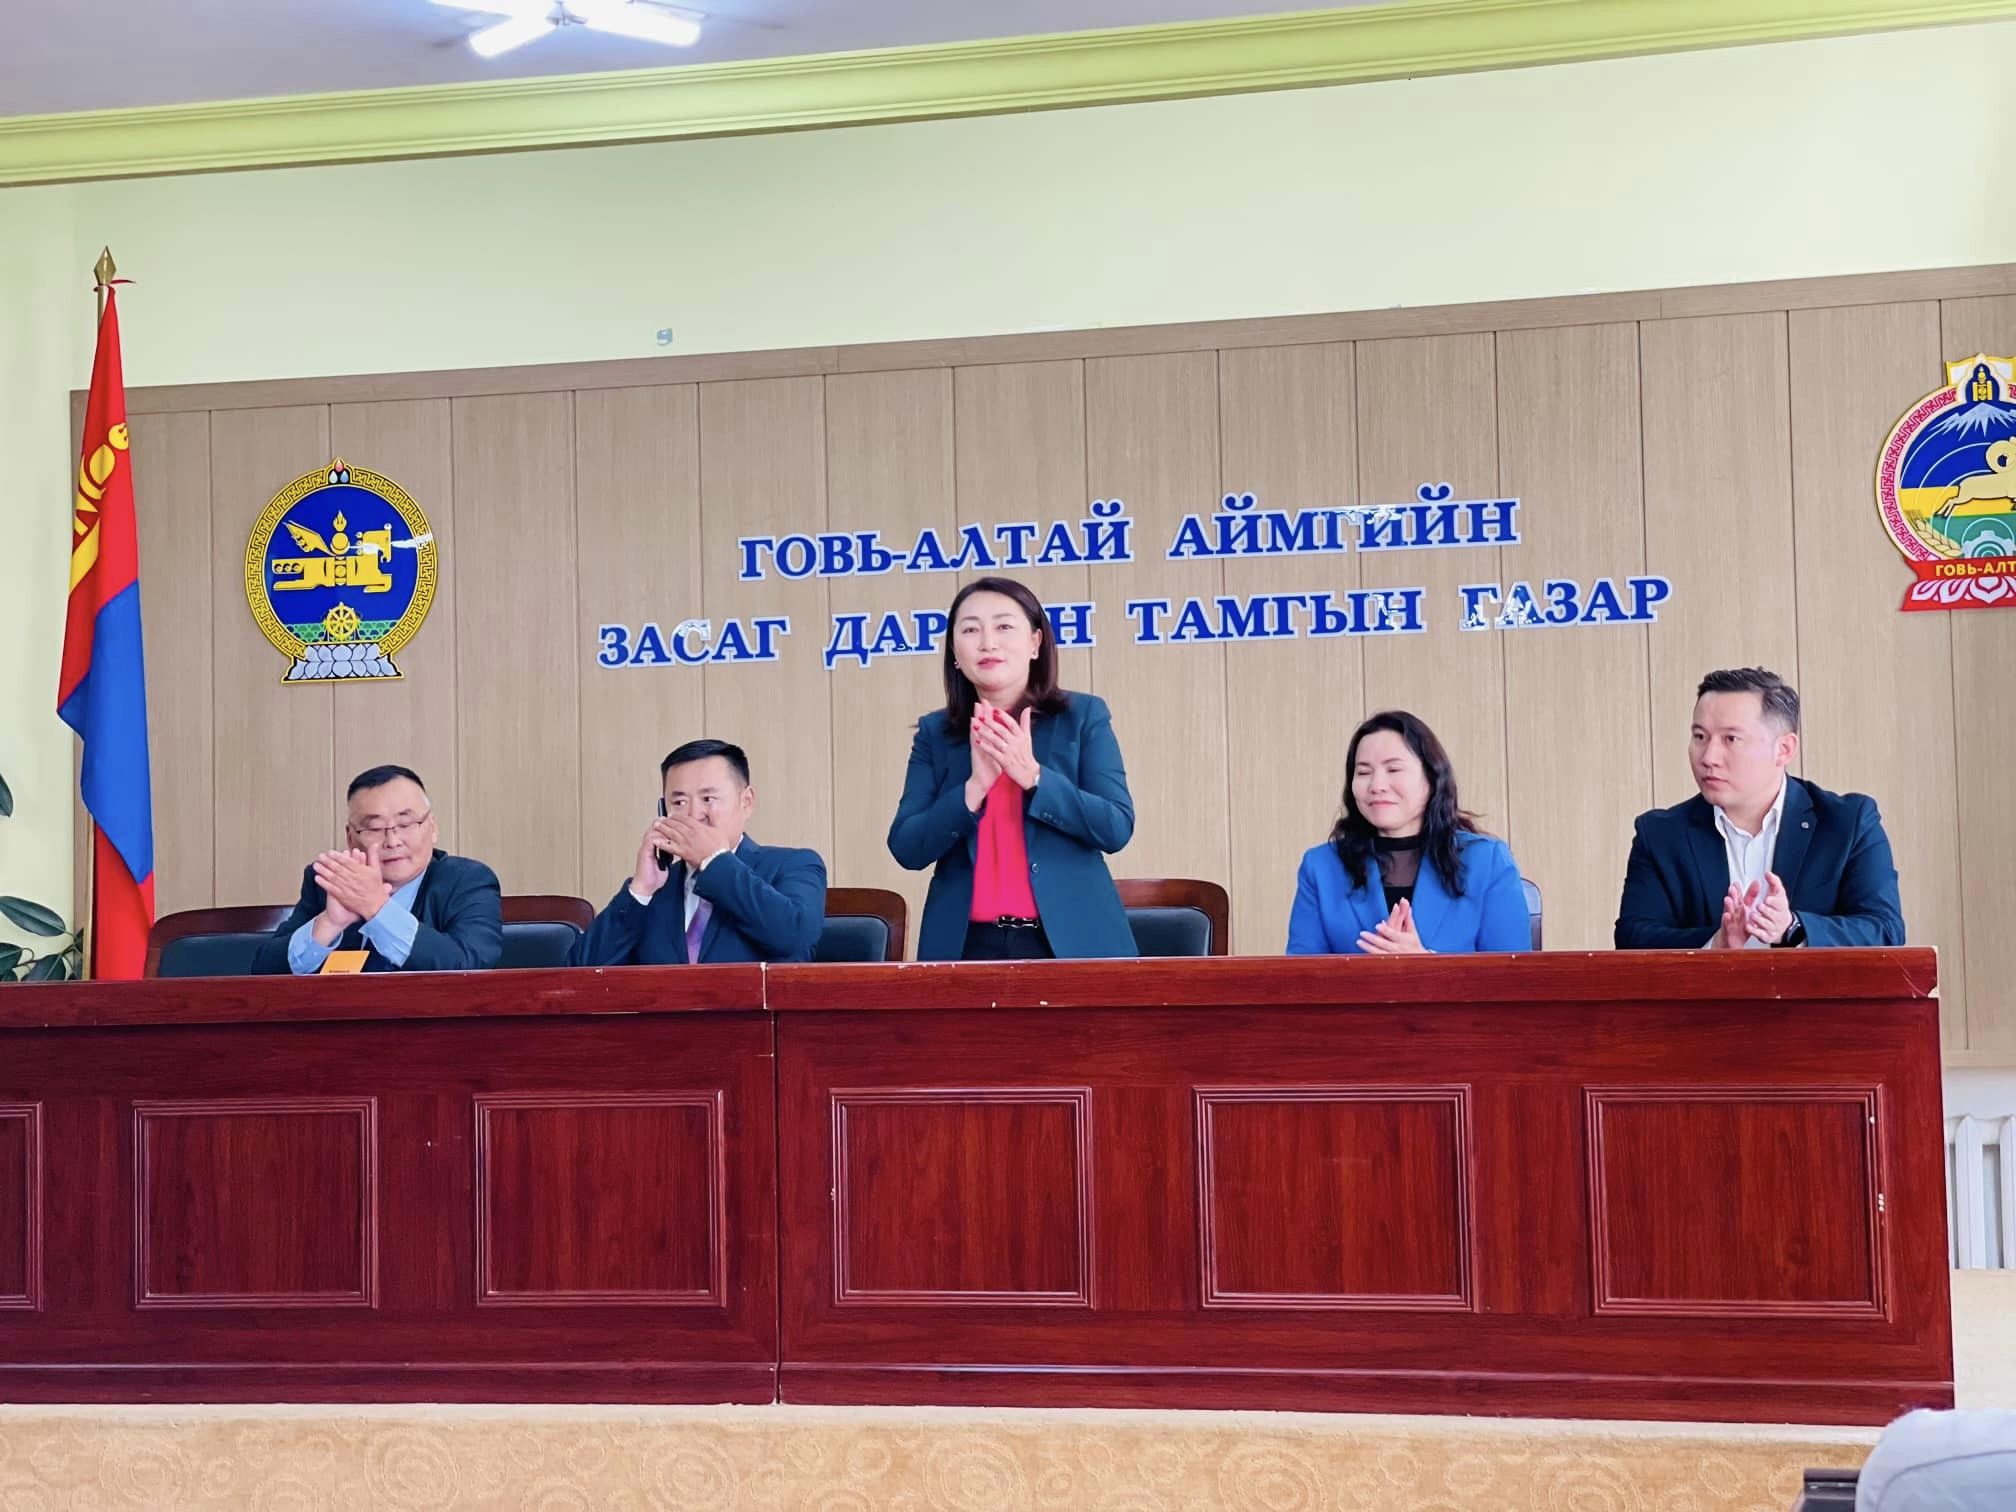 Говь-Алтай аймгийн нийгмийн даатгалын ажилтан албан хаагчидтай уулзав